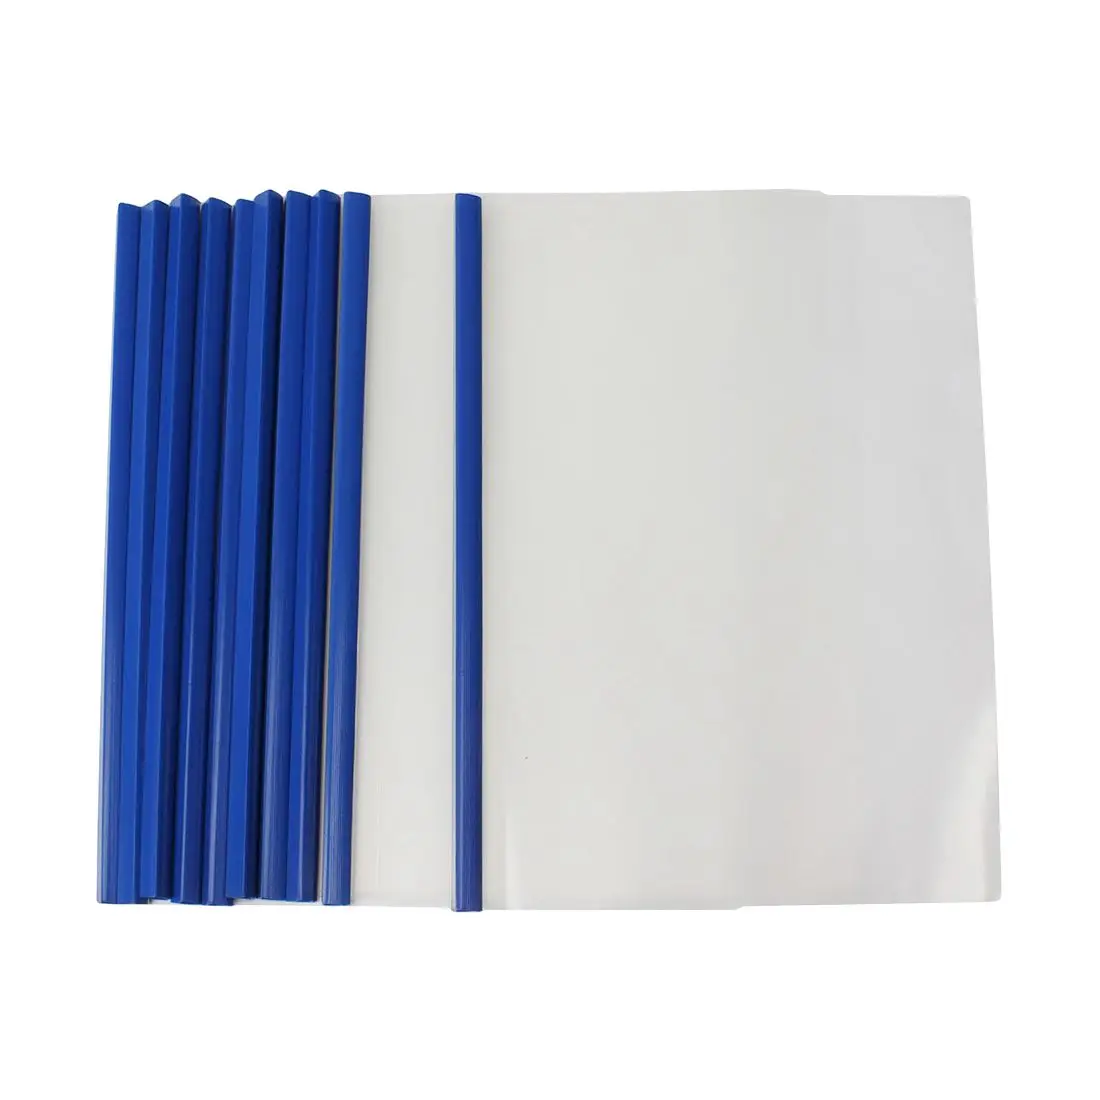 Пластик раздвижные переплетчиков для документов и листов A4.10 штук прозрачный синий